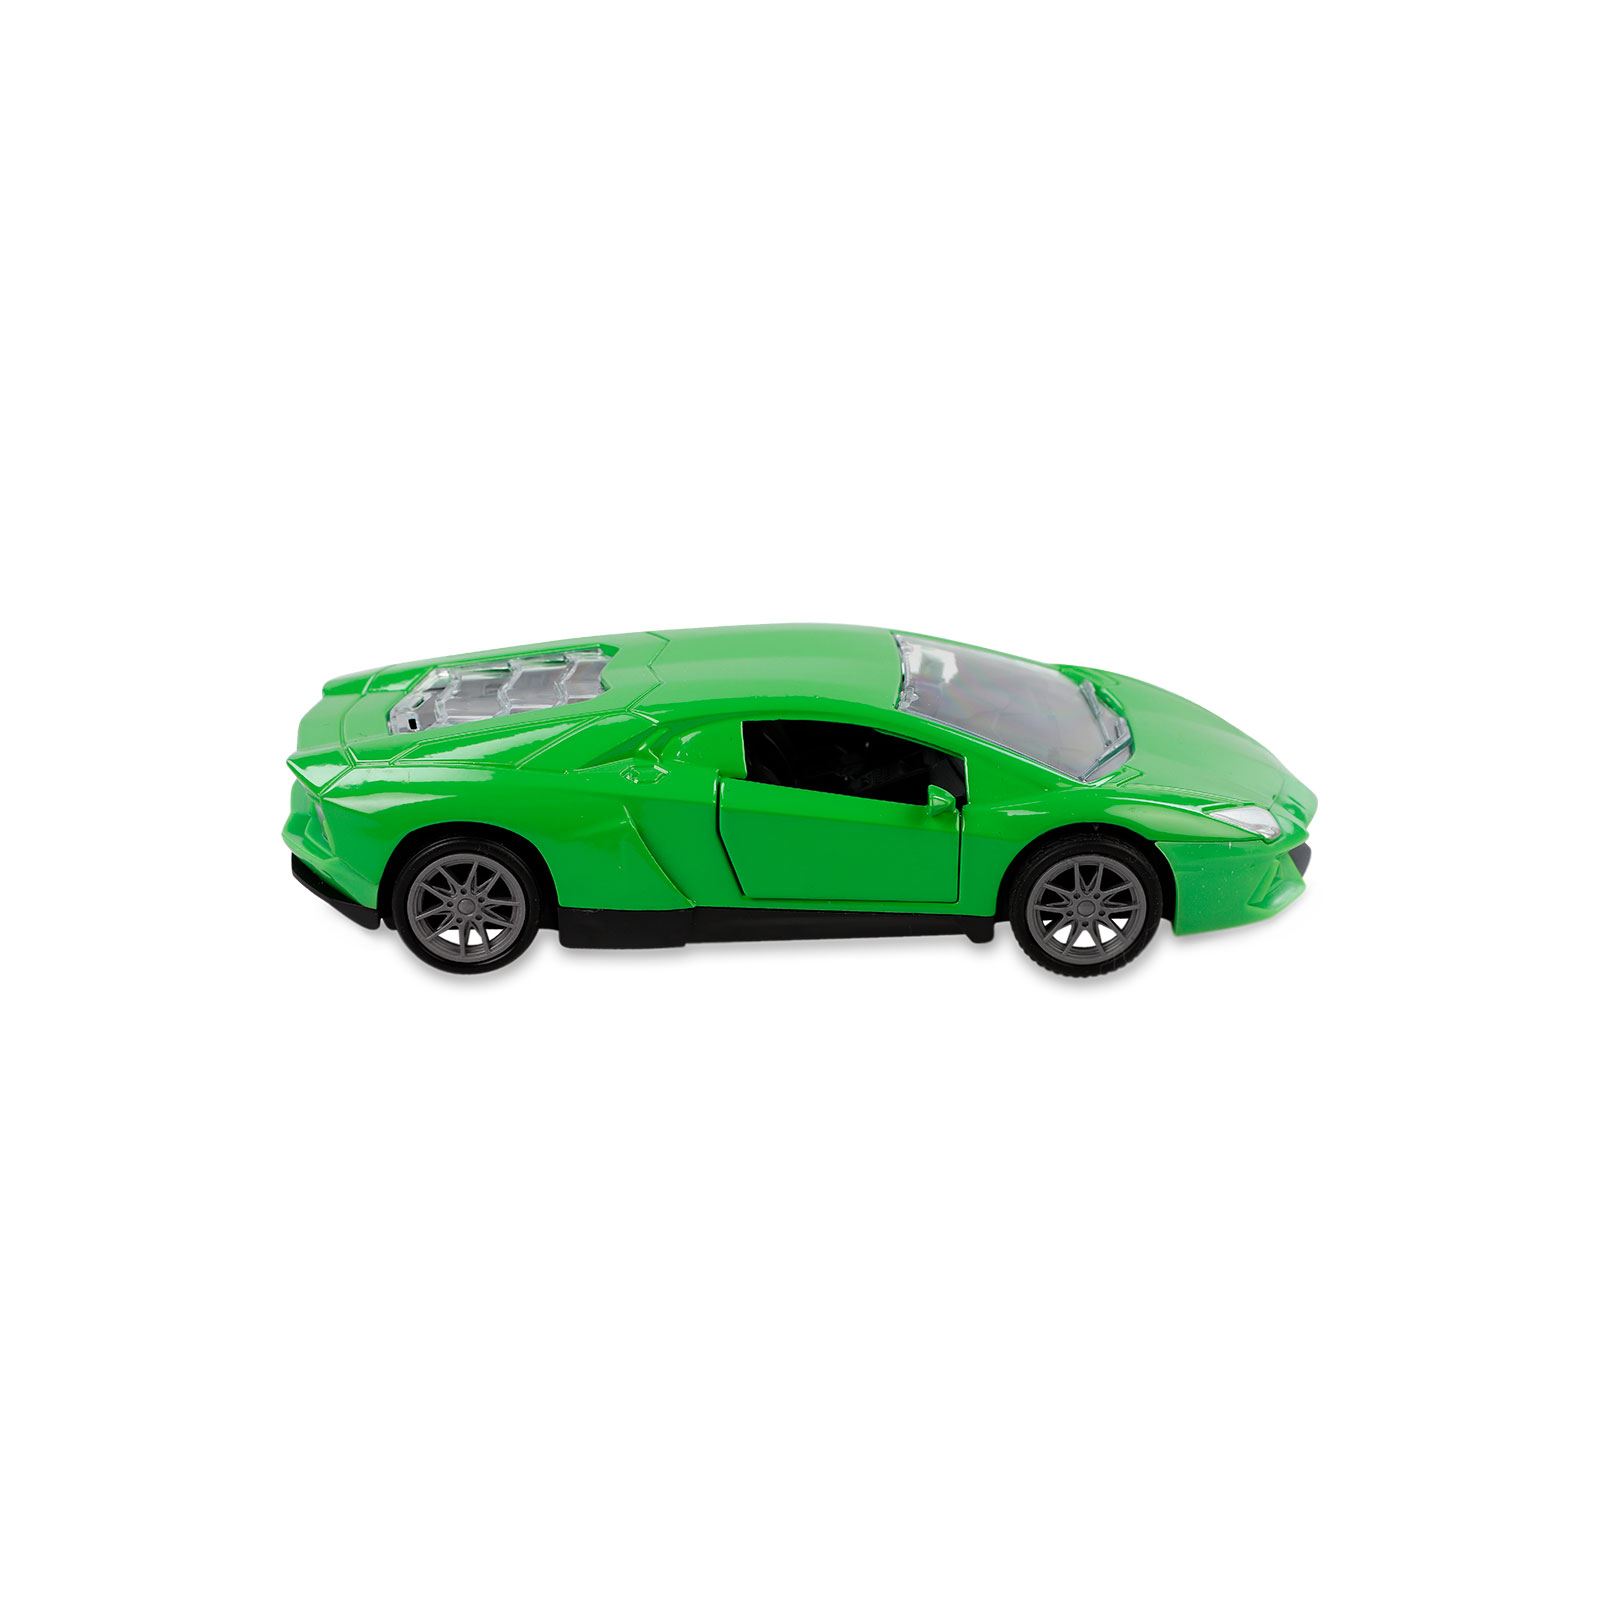 Canem Oyuncak Çek Bırak Metal Araba Yeşil